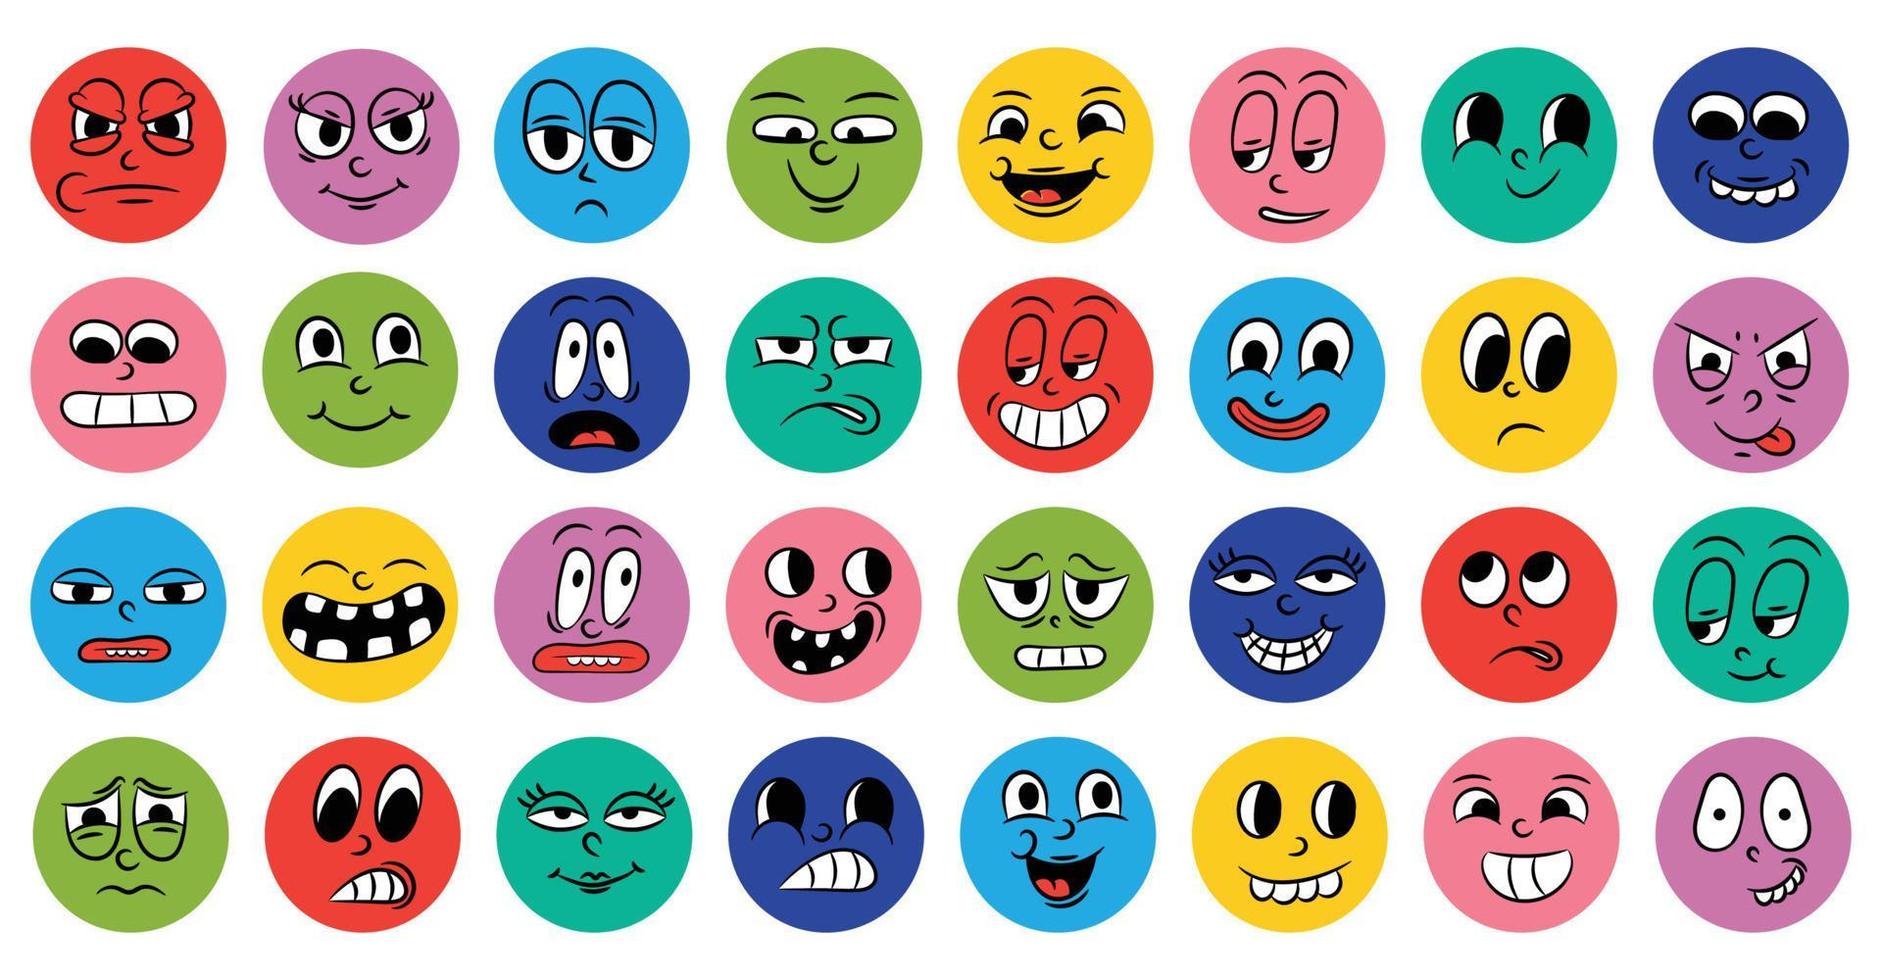 conjunto de caras engraçadas em quadrinhos de desenhos animados em estilo retro com diferentes expressões de emoções. ícones redondos abstratos de cabeças de personagens emocionais. animação de pessoas emoji no estilo dos anos 50 e 60. vetor